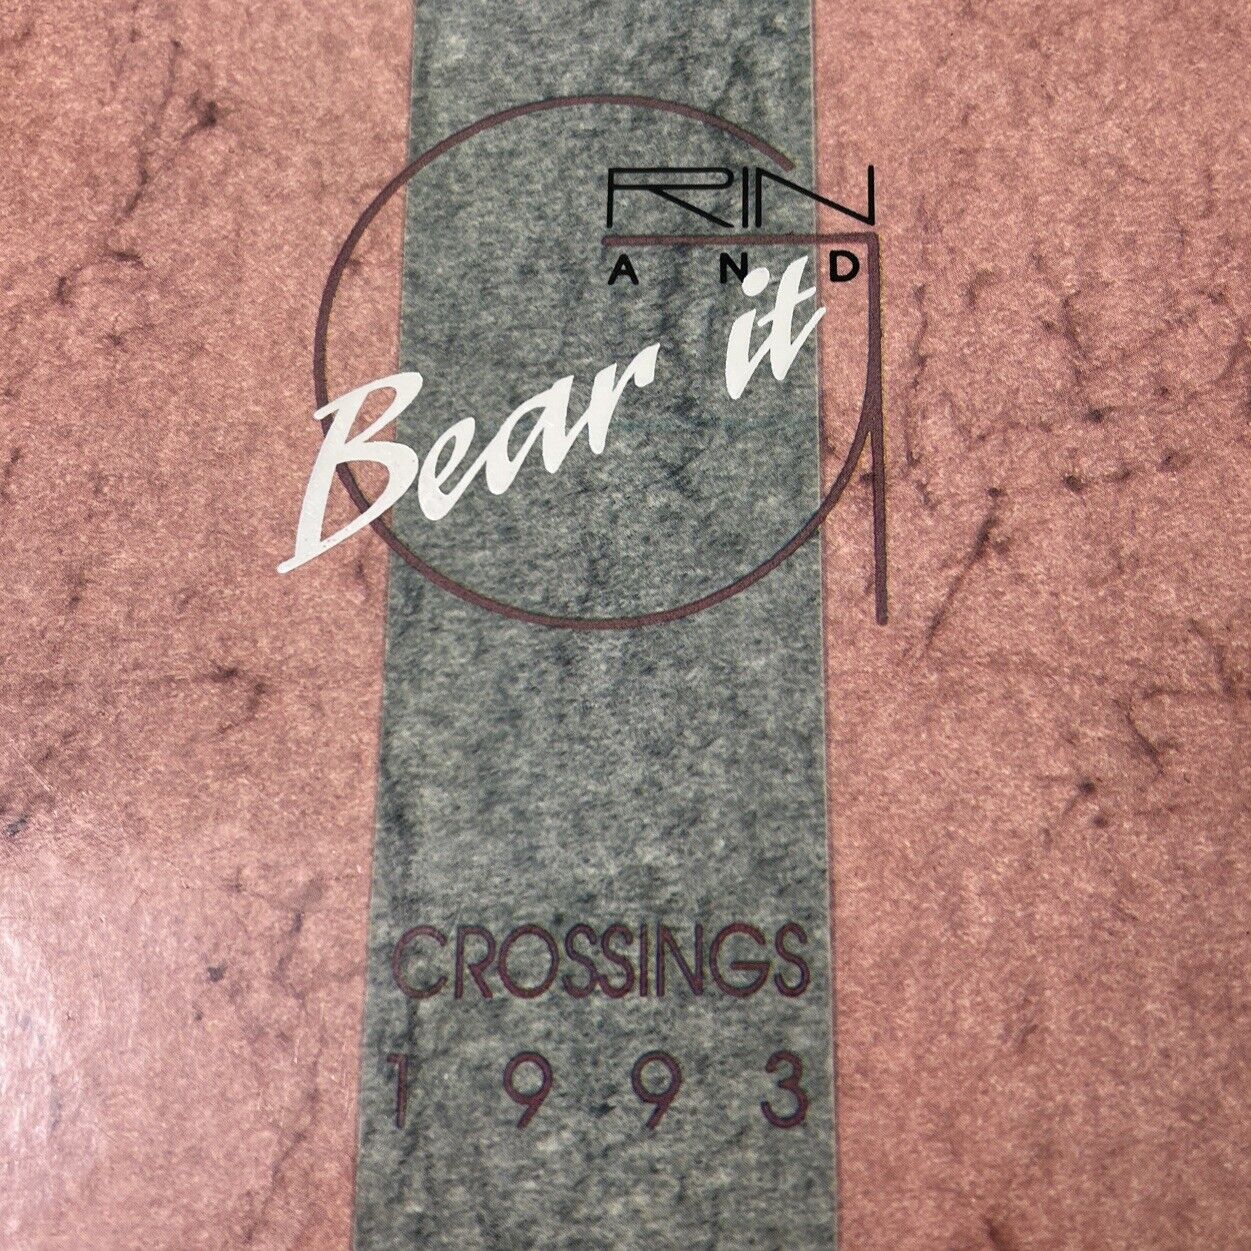 1993 Crossings Cypress Creek High School Orlando Florida yearbook Vintage Signed